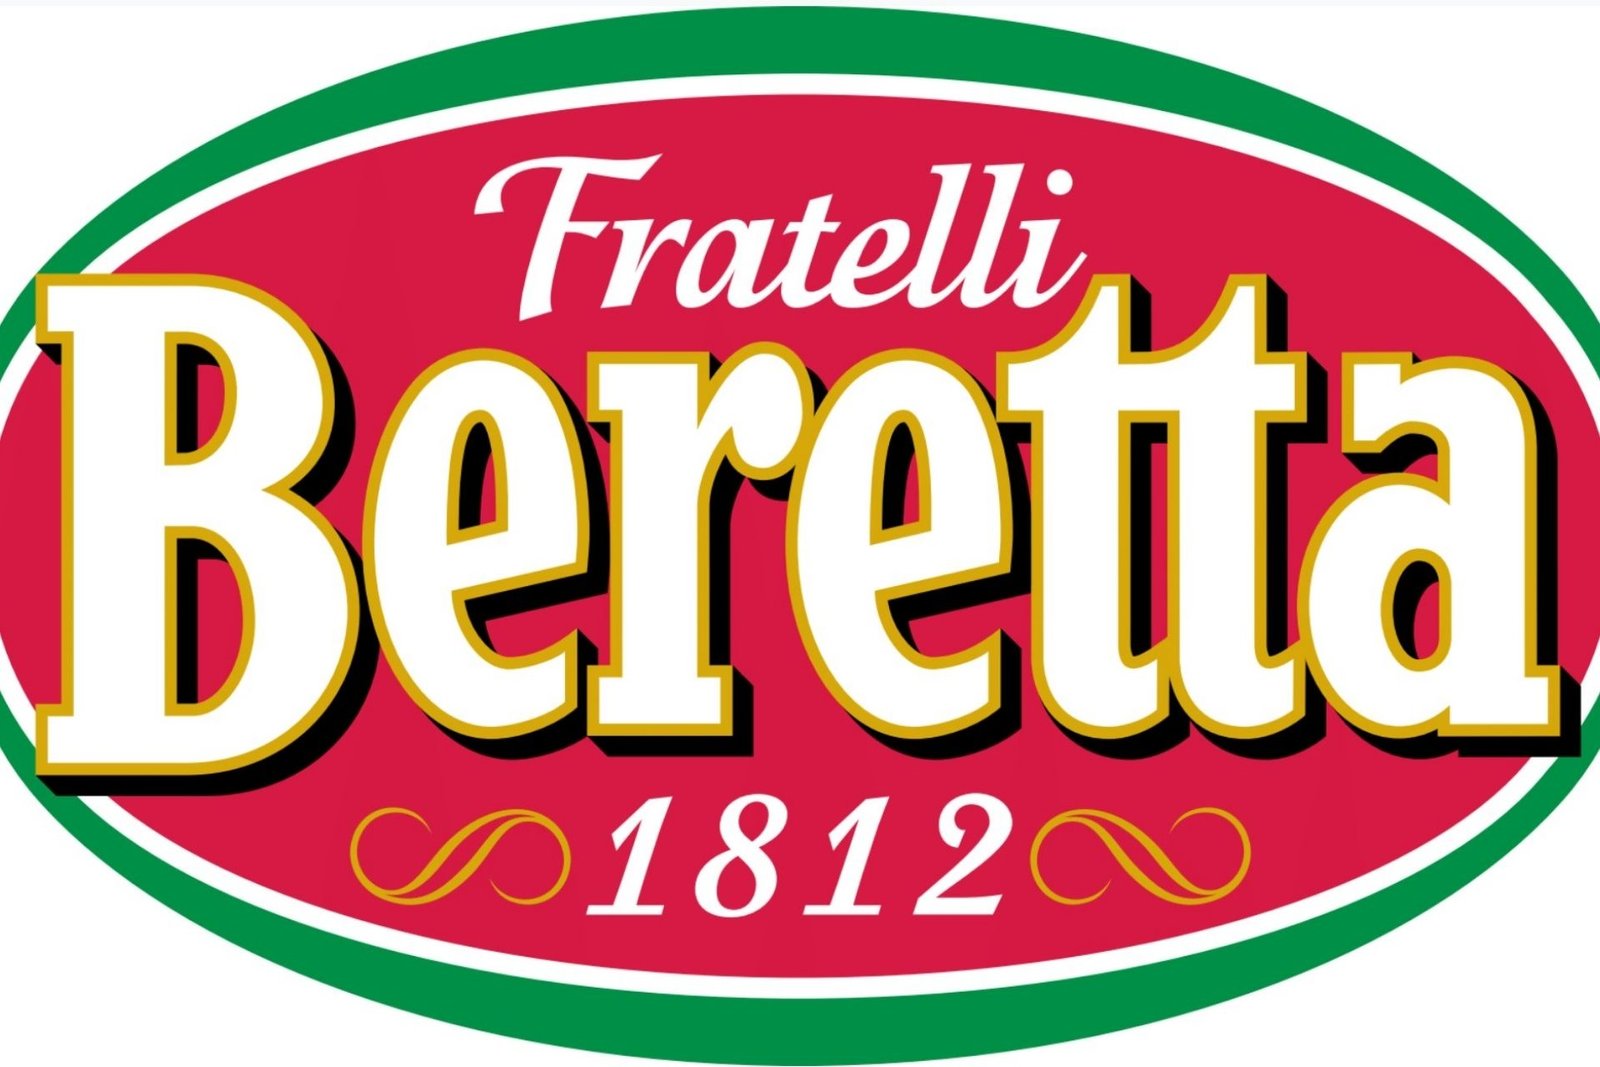 Fratelli Beretta